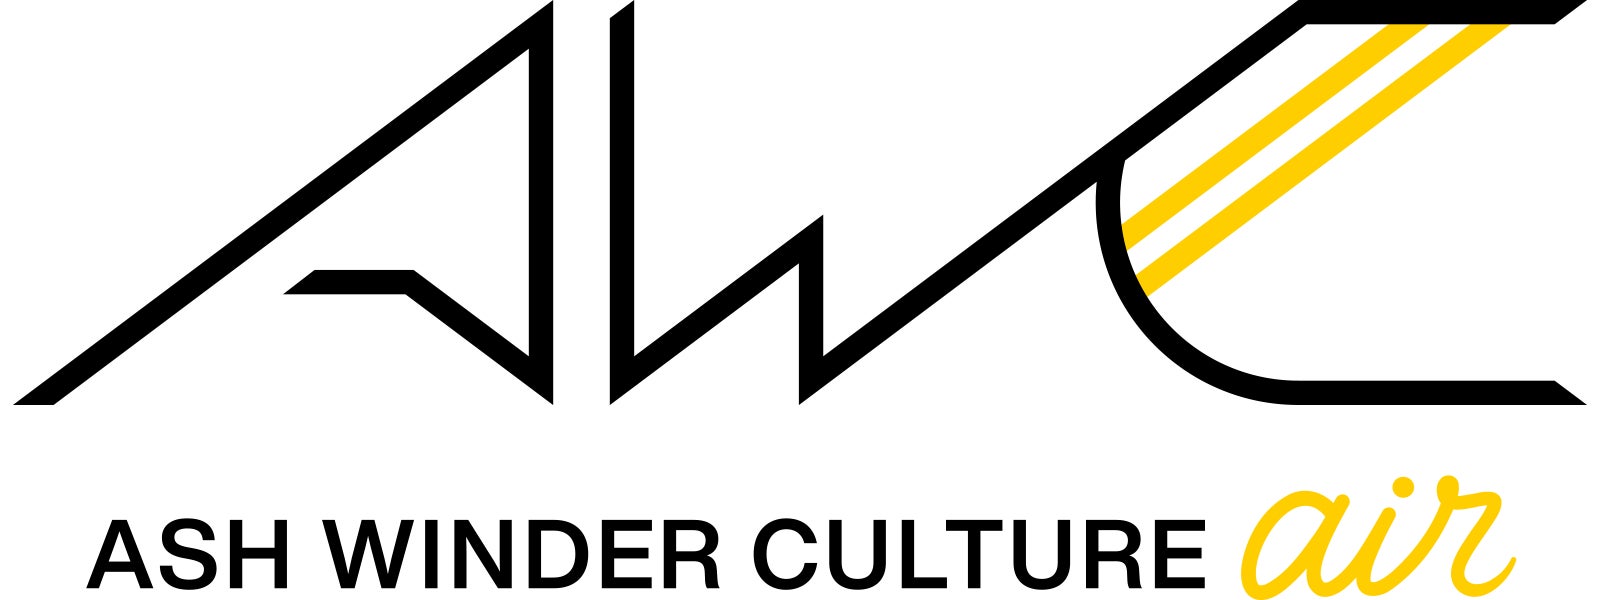 株式会社ASH WINDERが「ASH WINDER CULTURE air」を新設、eスポーツタレント「Retloff」「西井綾音」が加入のサブ画像9